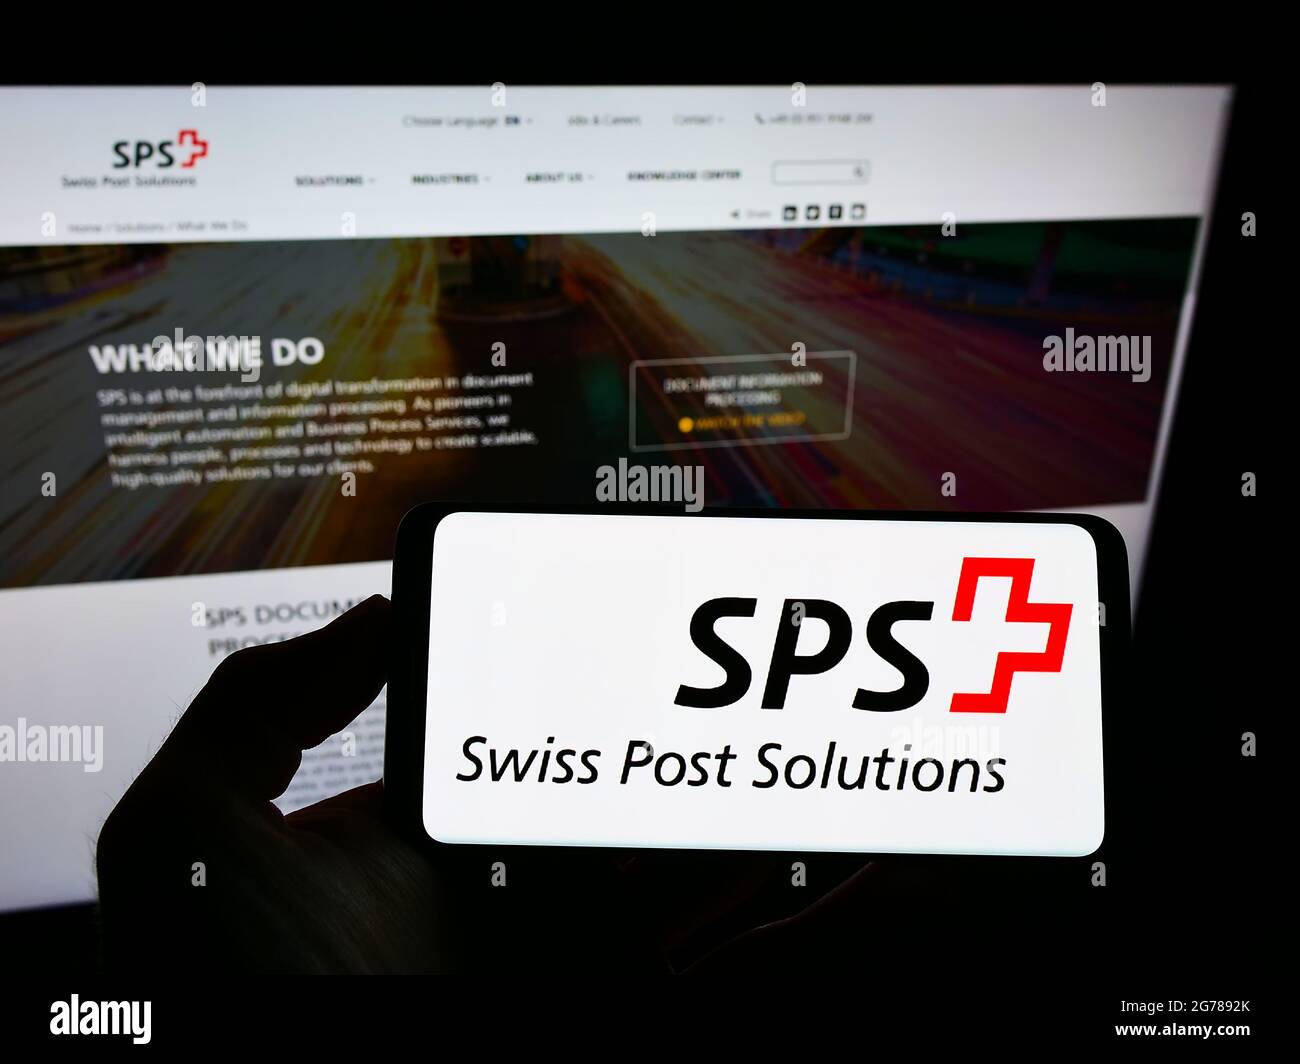 Persona in possesso di smartphone con il logo della società di gestione dei documenti Swiss Post Solutions (SPS) sullo schermo davanti al sito web. Mettere a fuoco il display del telefono. Foto Stock